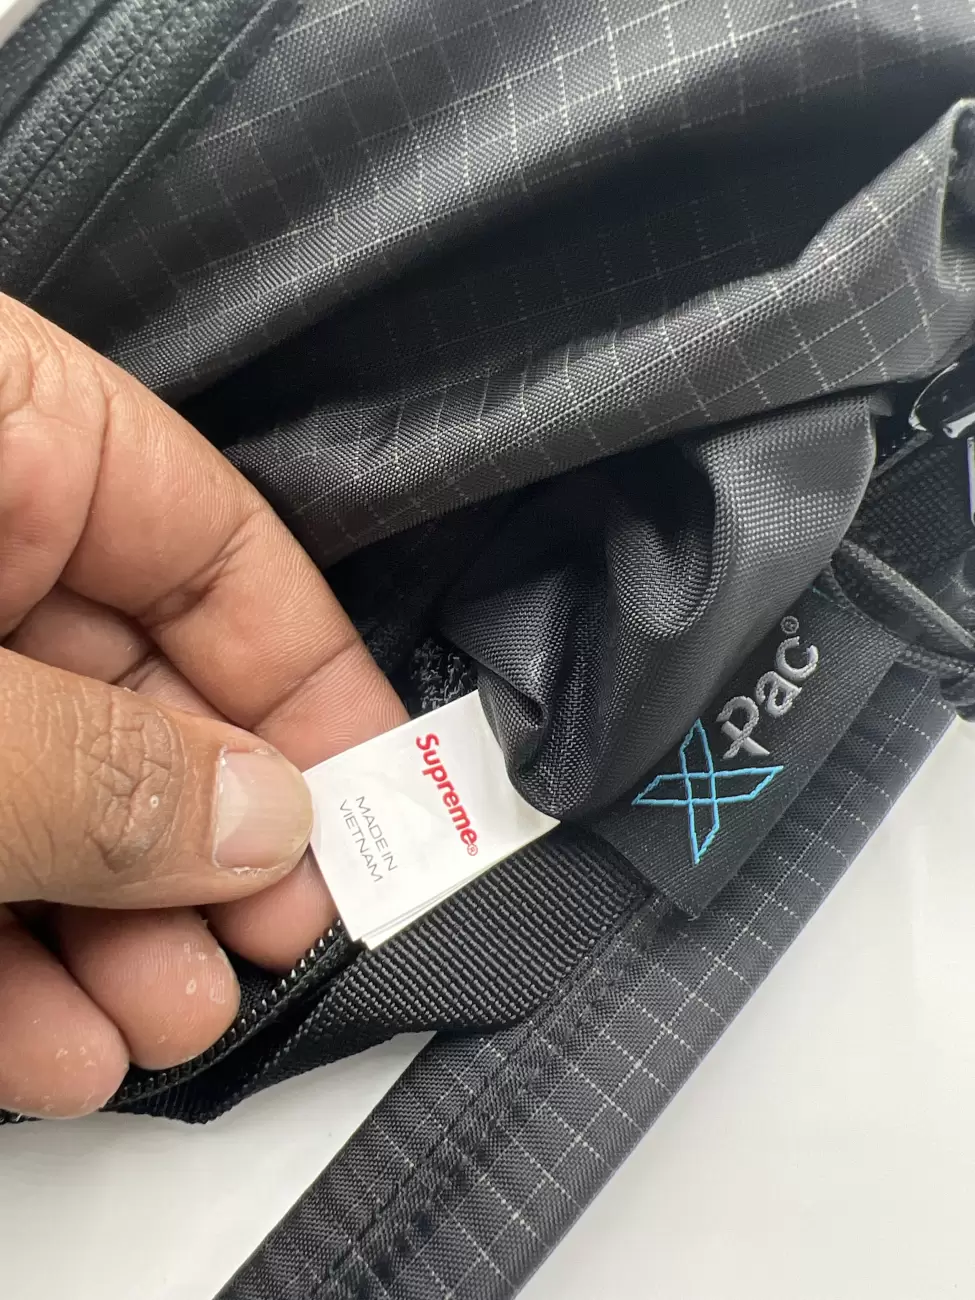 48962 - Supreme Logo Shoulder Bag Black X-pac | Item Details - AfterMarket